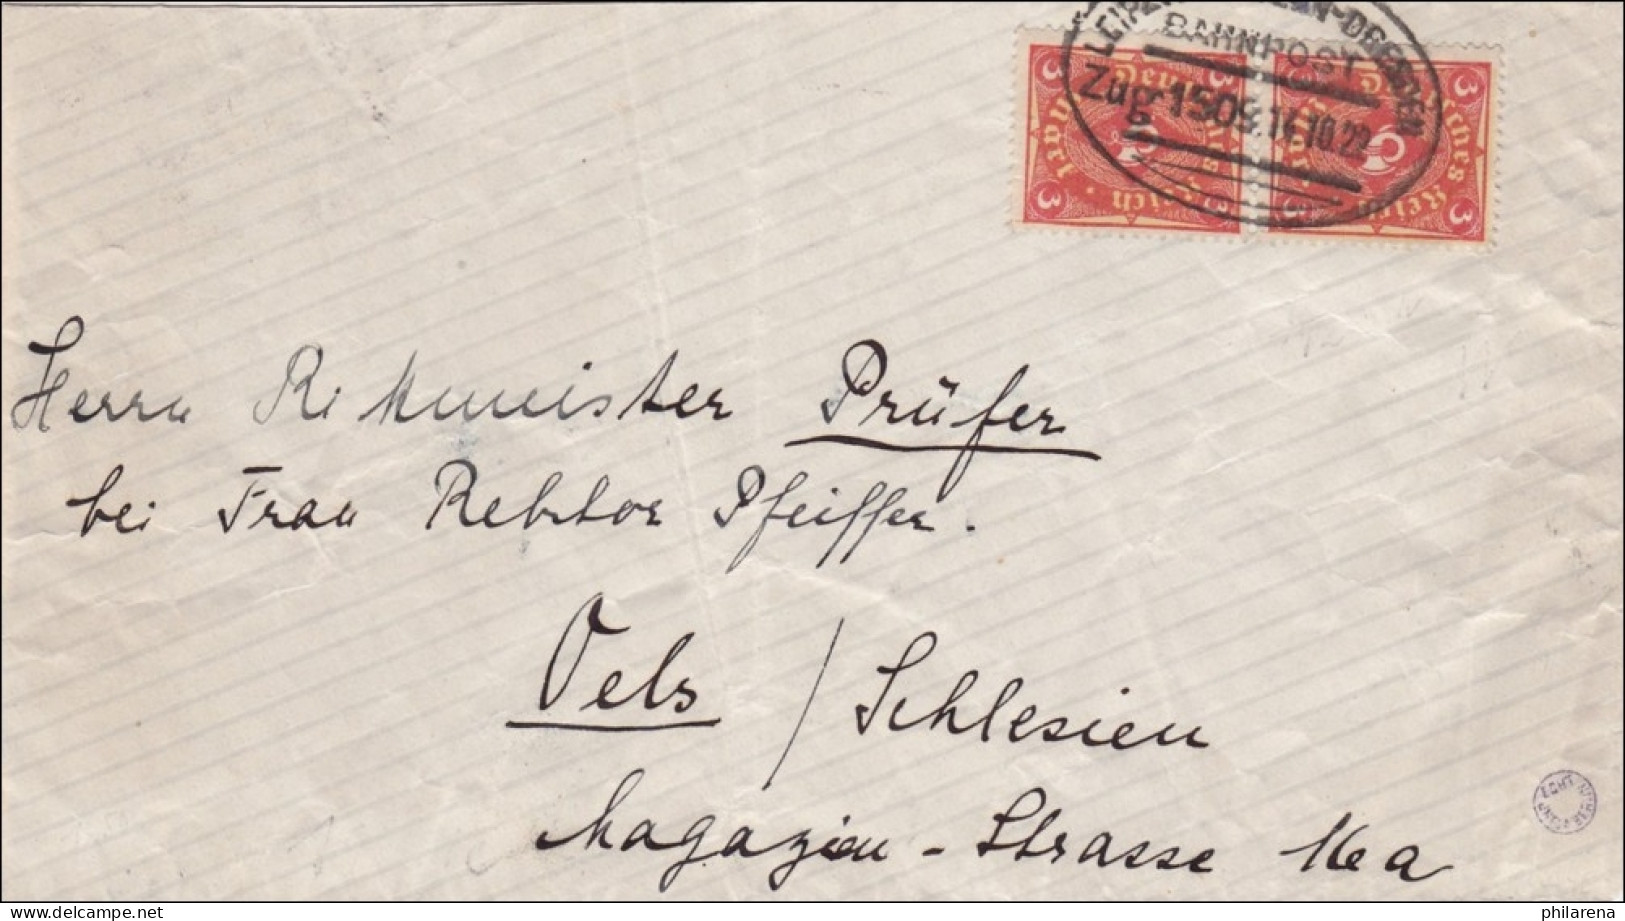 Bahnpost: Brief Aus Grimma Mit Zugstempel Leipzig - Dresden 1922 - Lettres & Documents